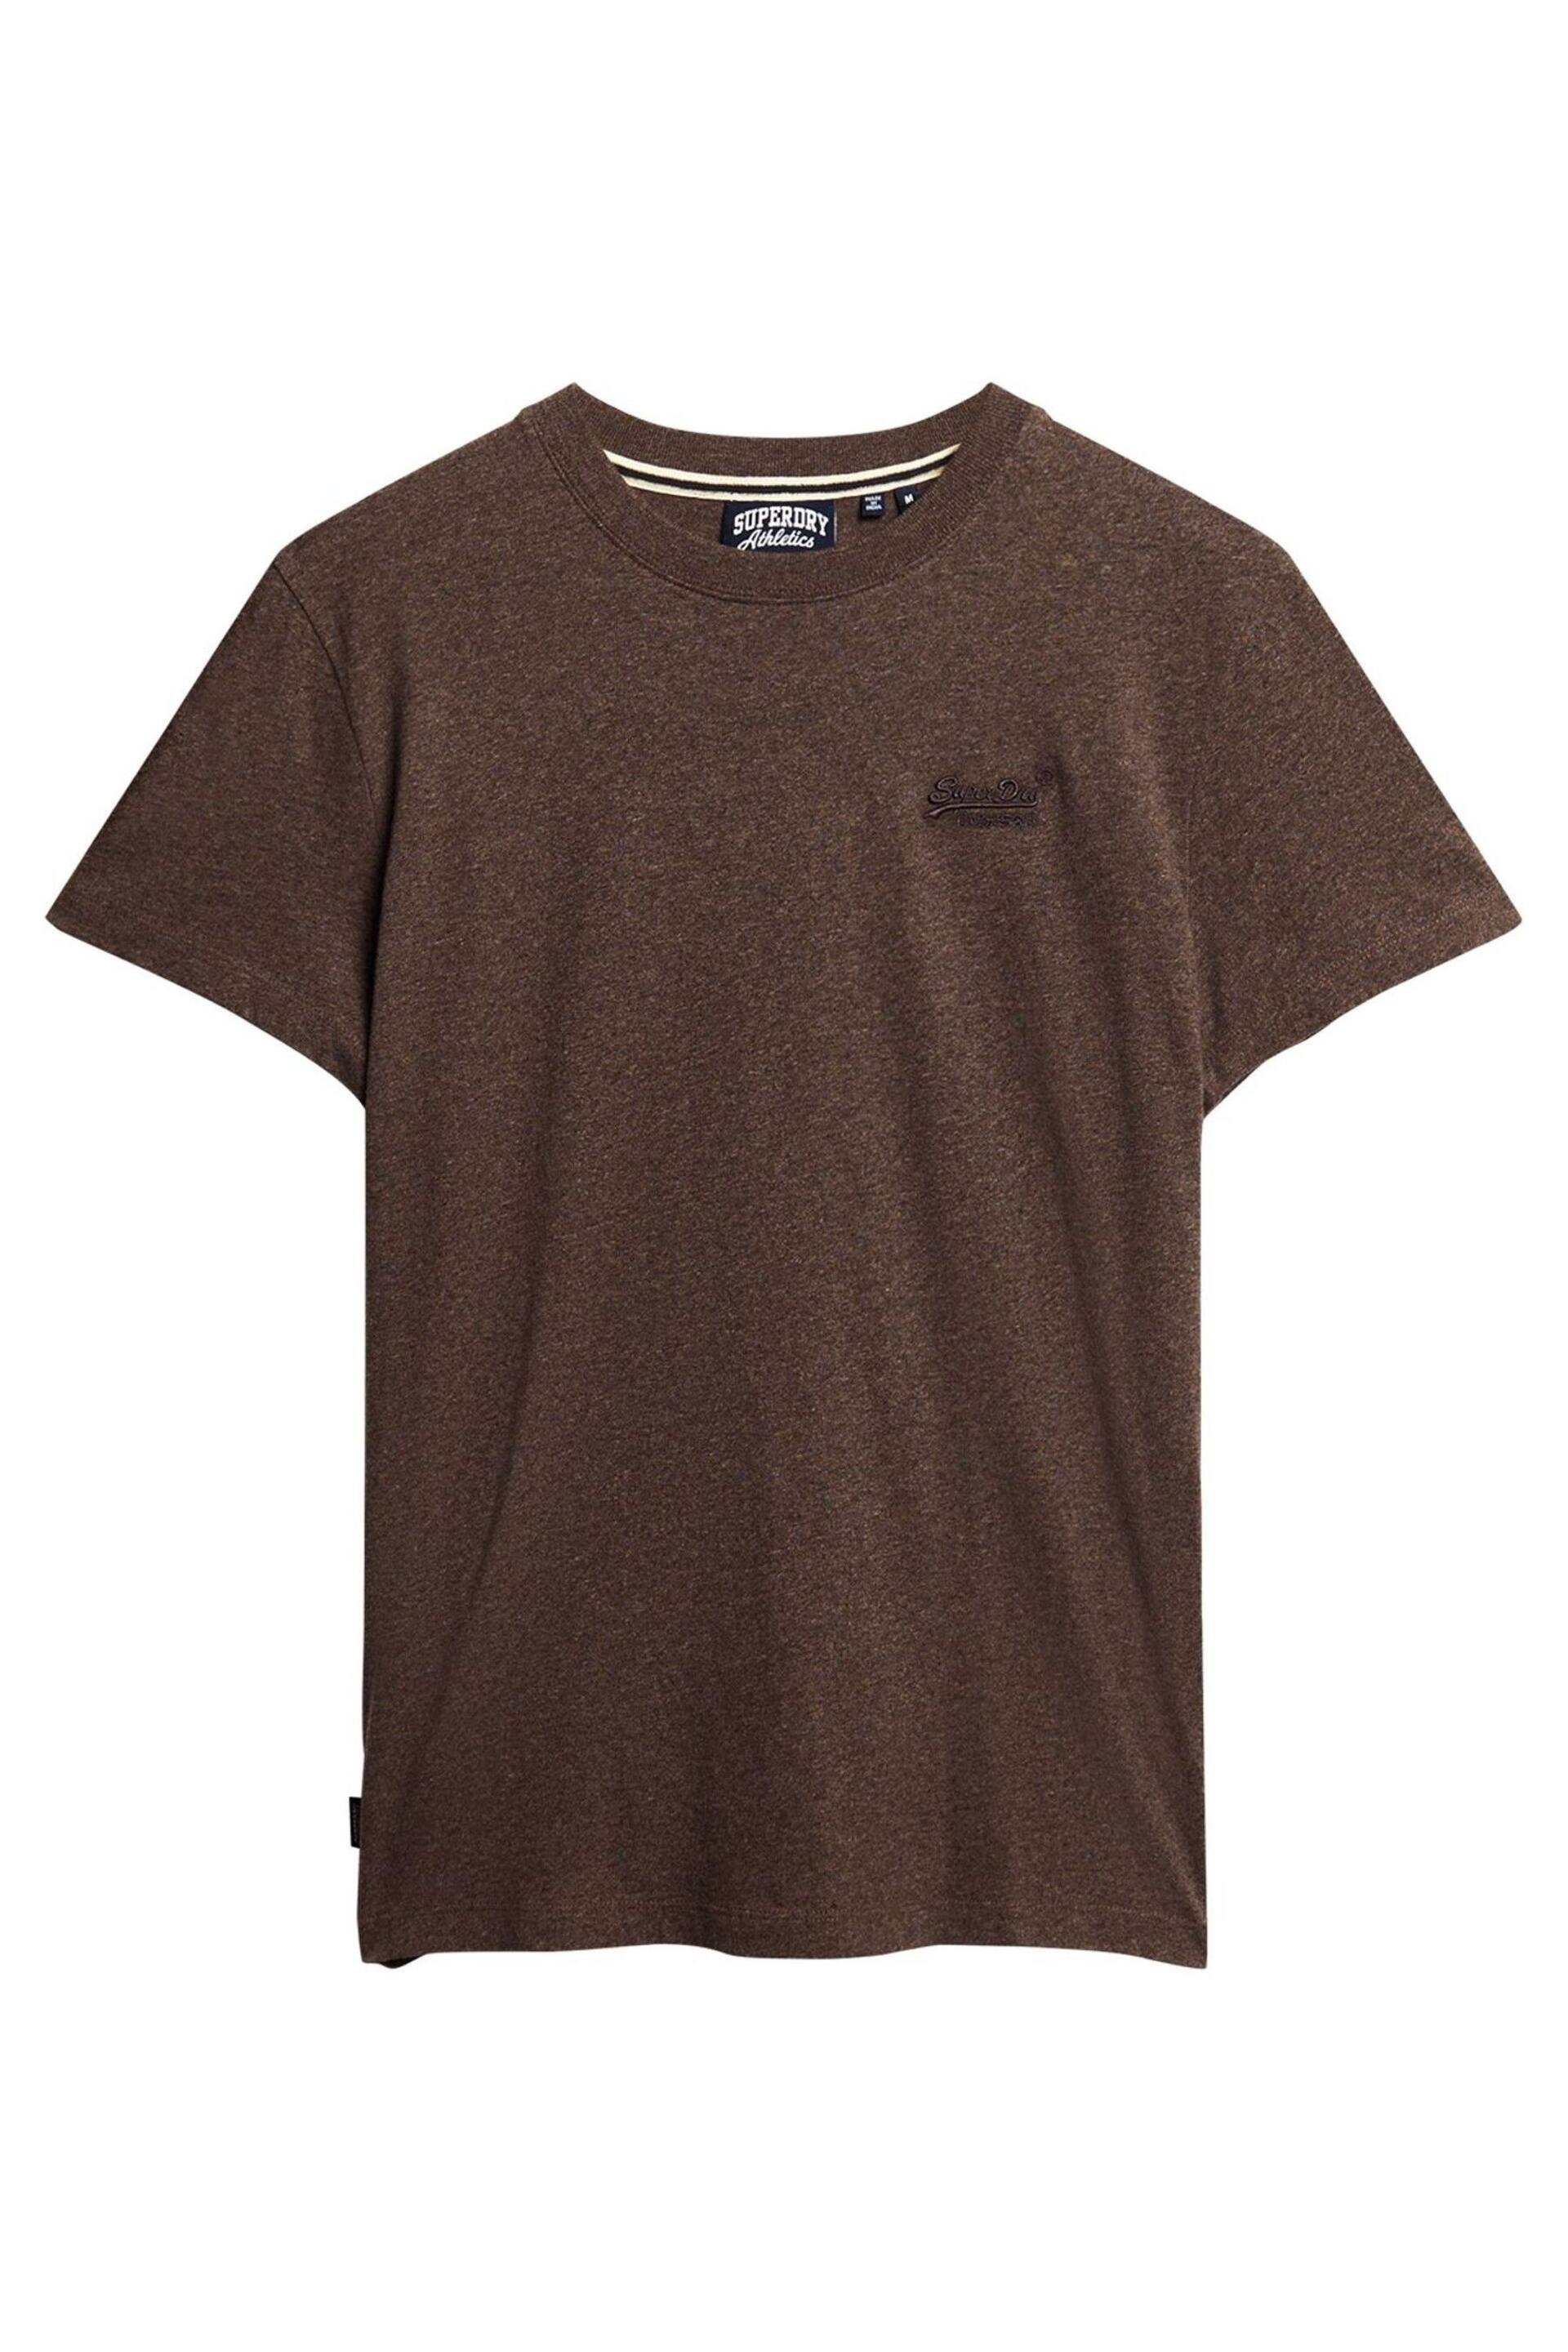 Superdry Brown Vintage Logo Emb T-Shirt - Image 10 of 11